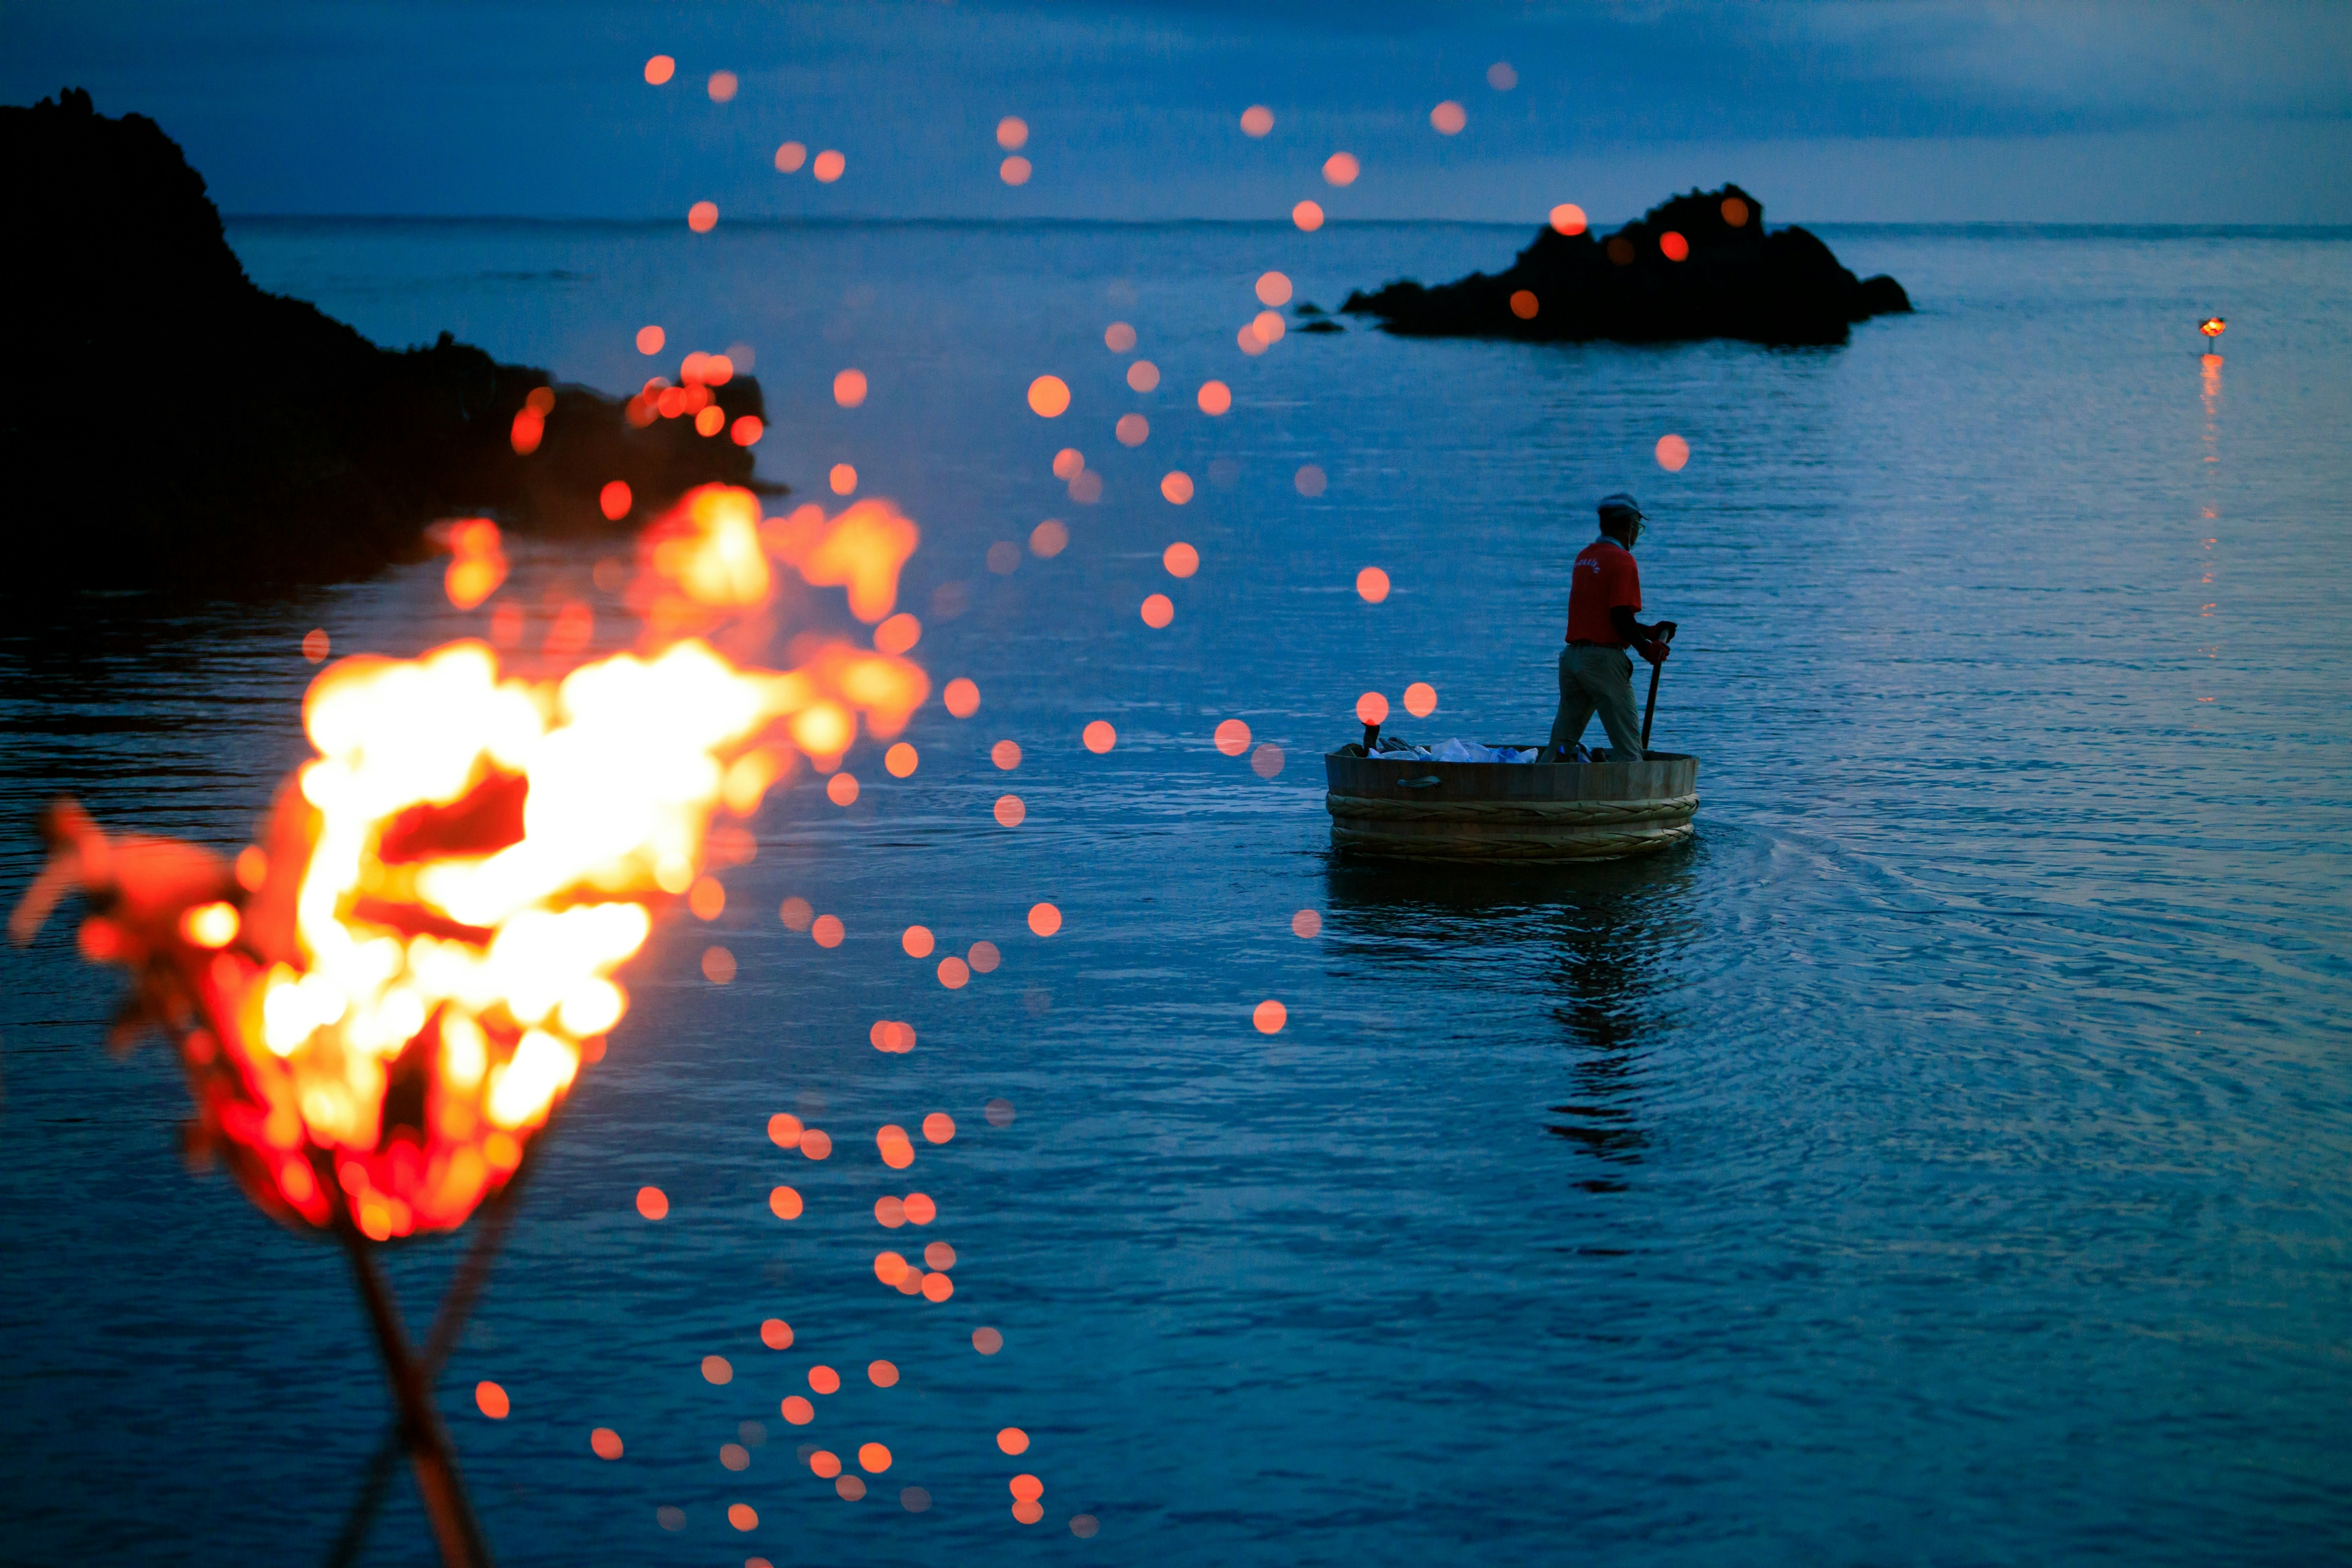 かがり火を焚いた特別なたらい舟体験を！
はんぎりサンセット&ナイター体験